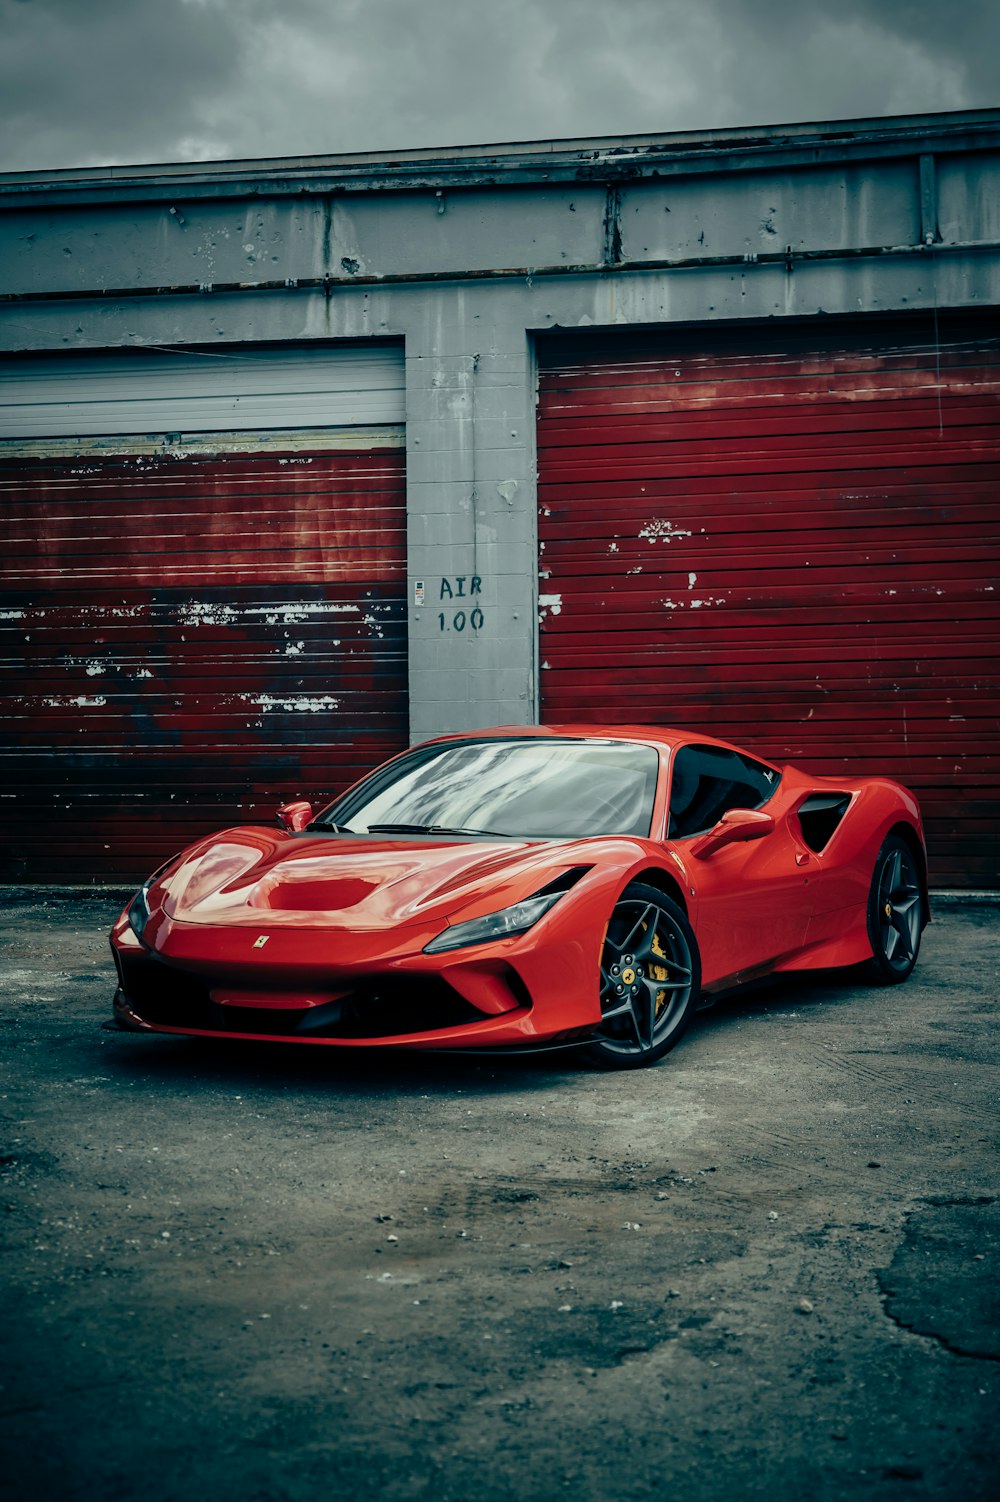 Fondos de pantalla de Ferrari: Descarga HD gratuita [500+ HQ] | Unsplash